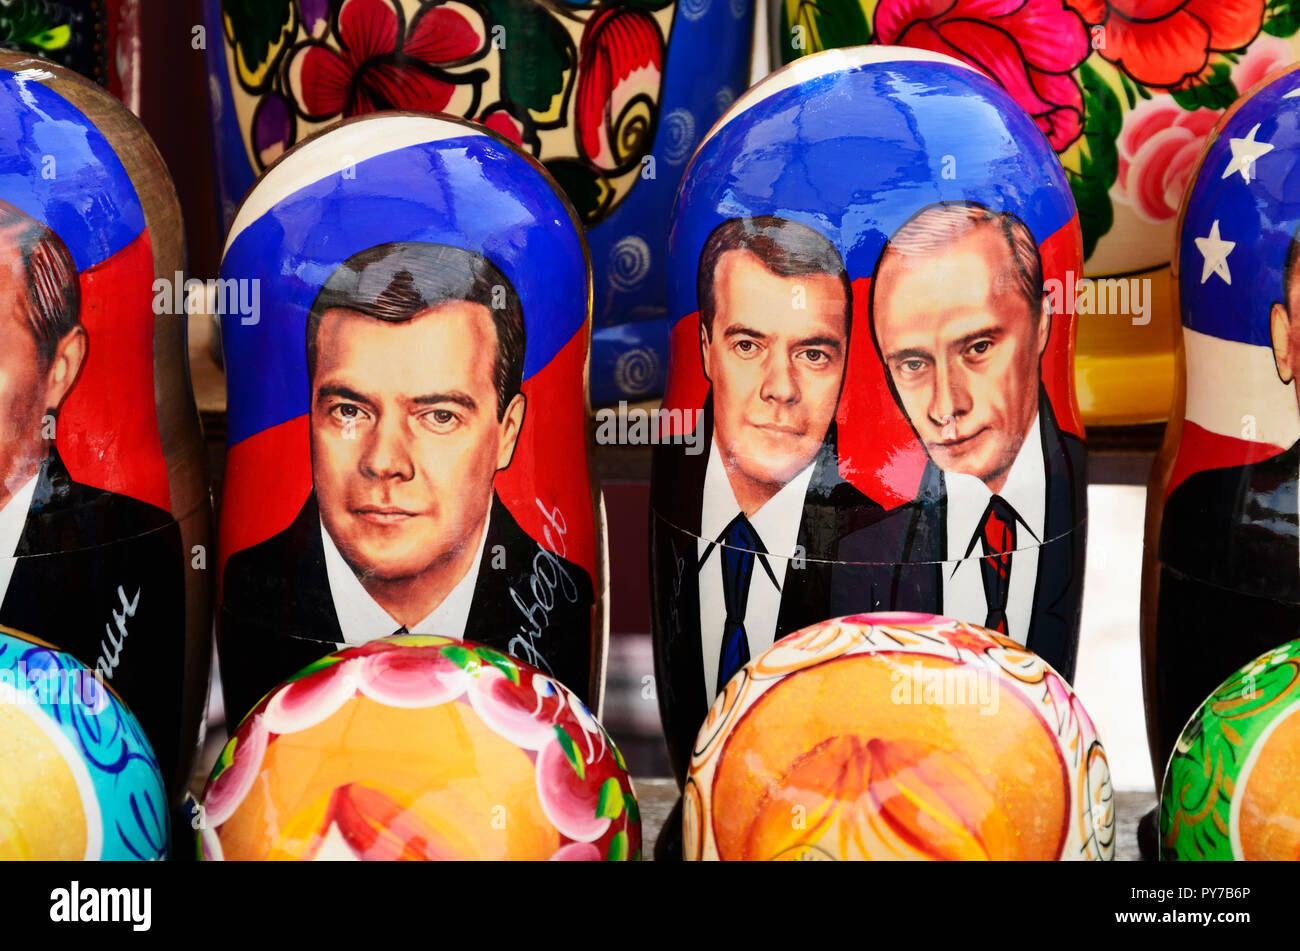 Poupée matriochka avec les visages des chefs d'état. Souvenirs soviétique dans un marché de rue. Le quartier de Vyborg, Vyborgsky, l'Oblast de Léningrad, en Russie, Rus Banque D'Images